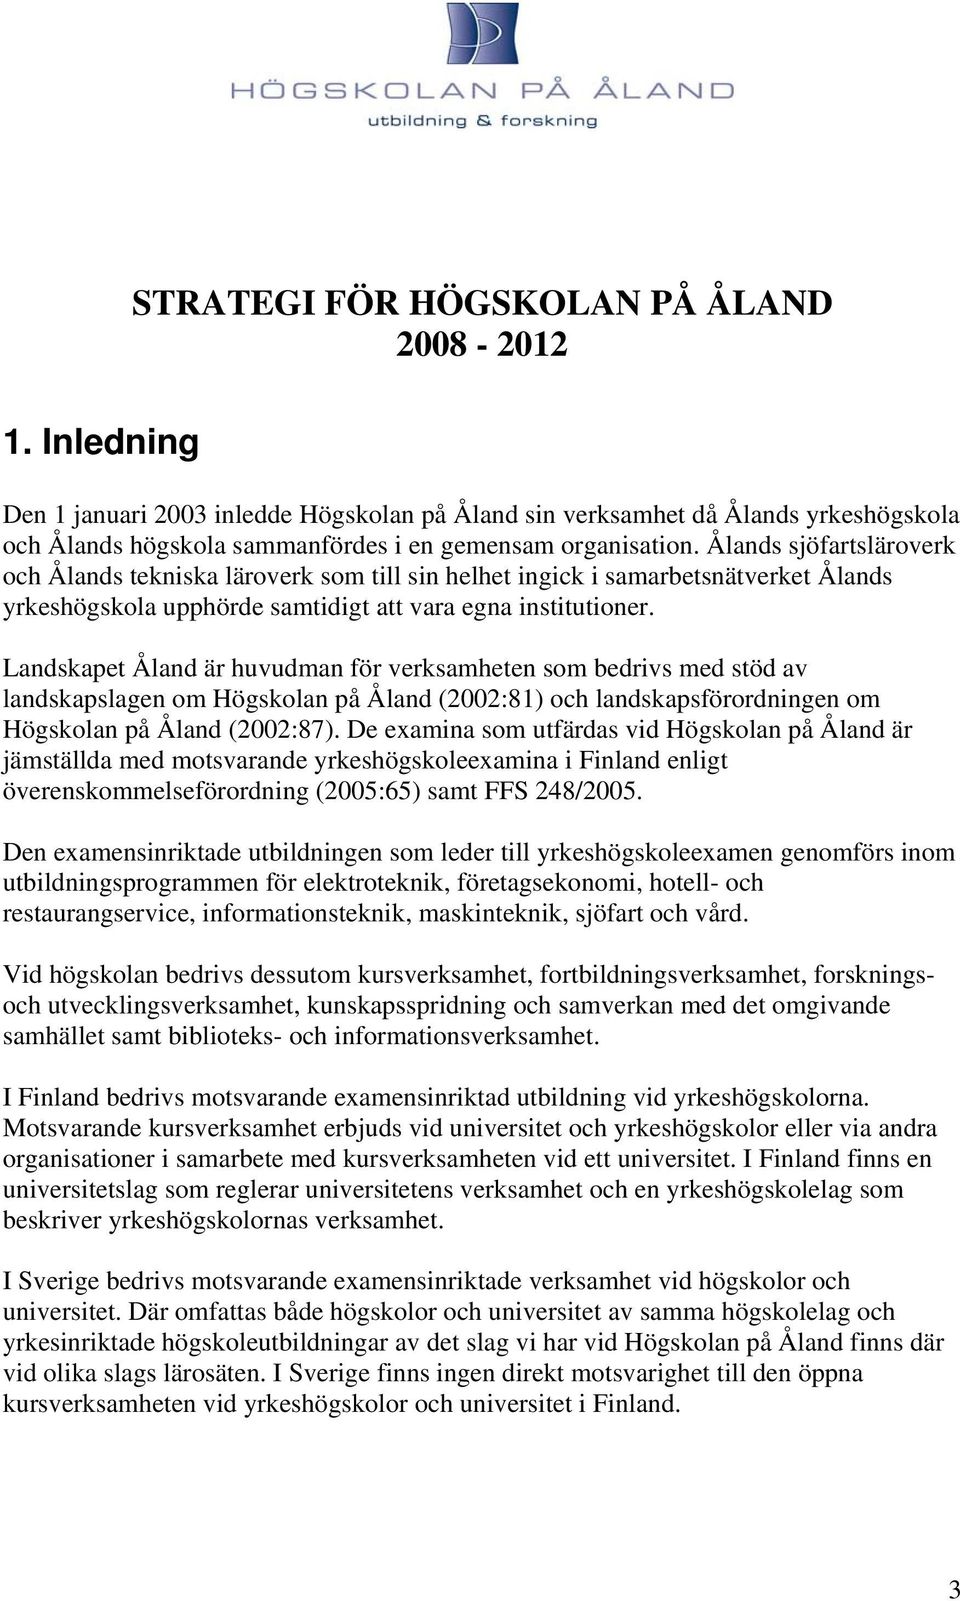 Landskapet Åland är huvudman för verksamheten som bedrivs med stöd av landskapslagen om Högskolan på Åland (2002:81) och landskapsförordningen om Högskolan på Åland (2002:87).